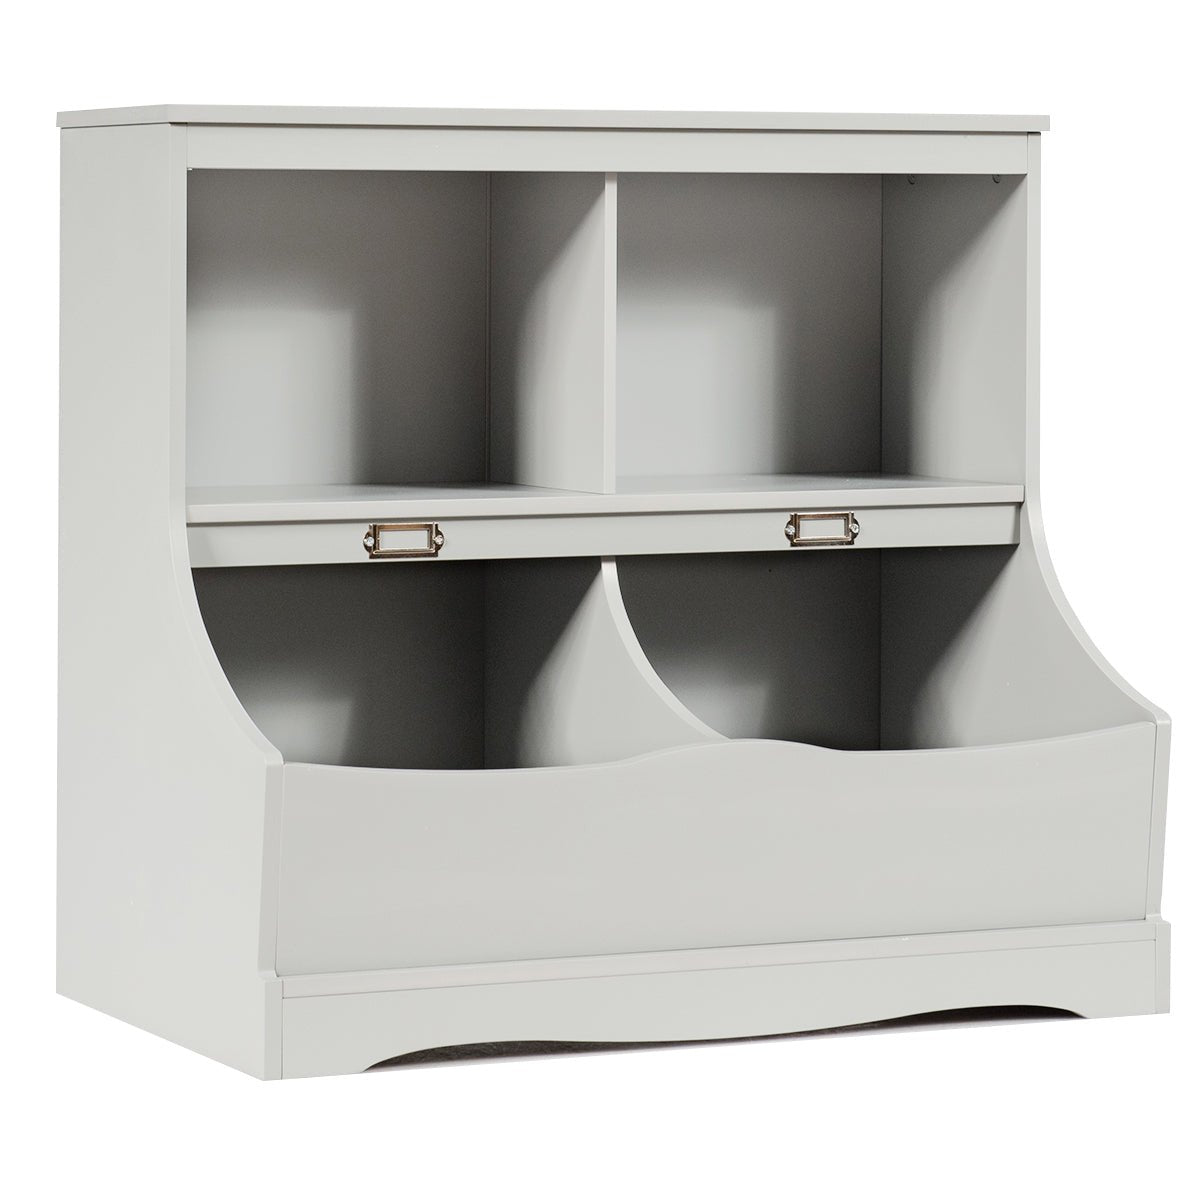 Grey 2-Tier Toy Shelf - Stylish Storage Solution for Kid's Room